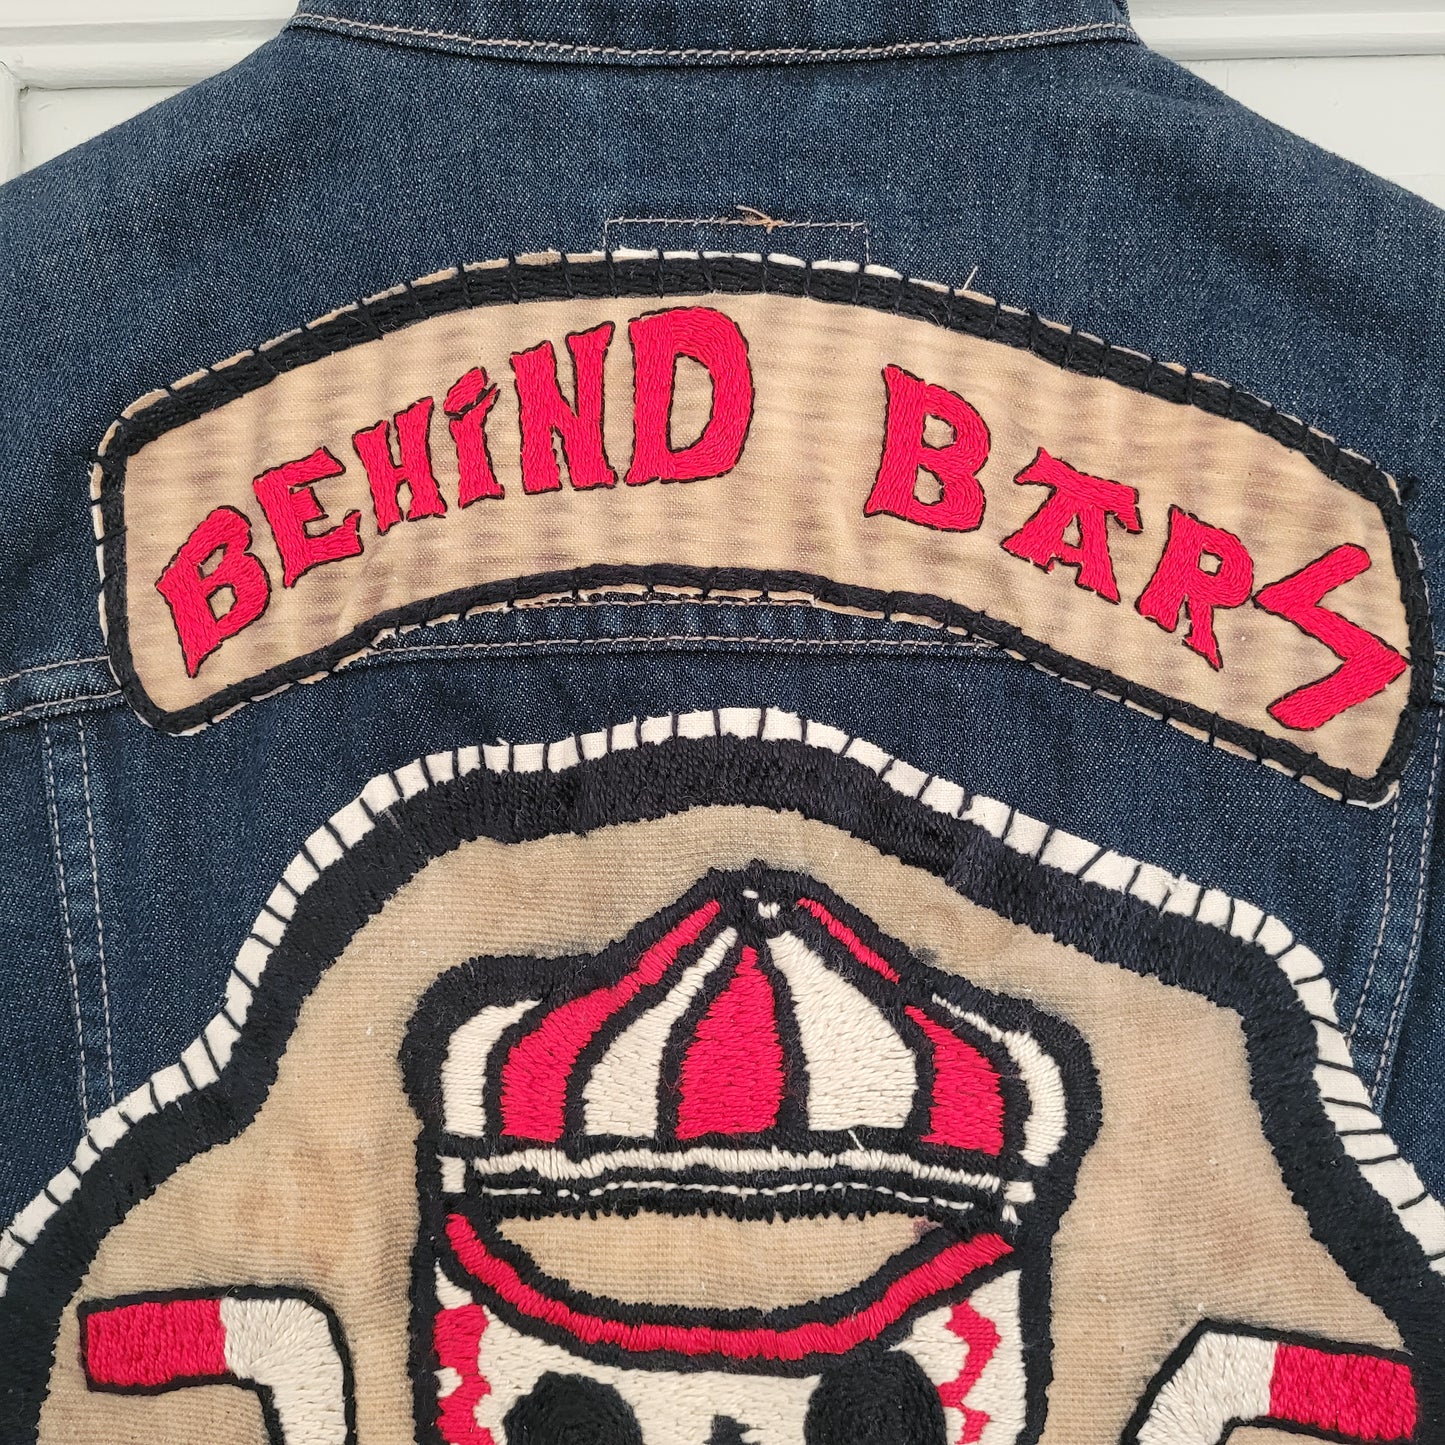 "Behind bars" chainstitched by hand Levi's Jacket/ Veste levis vintage brodée main et patchée